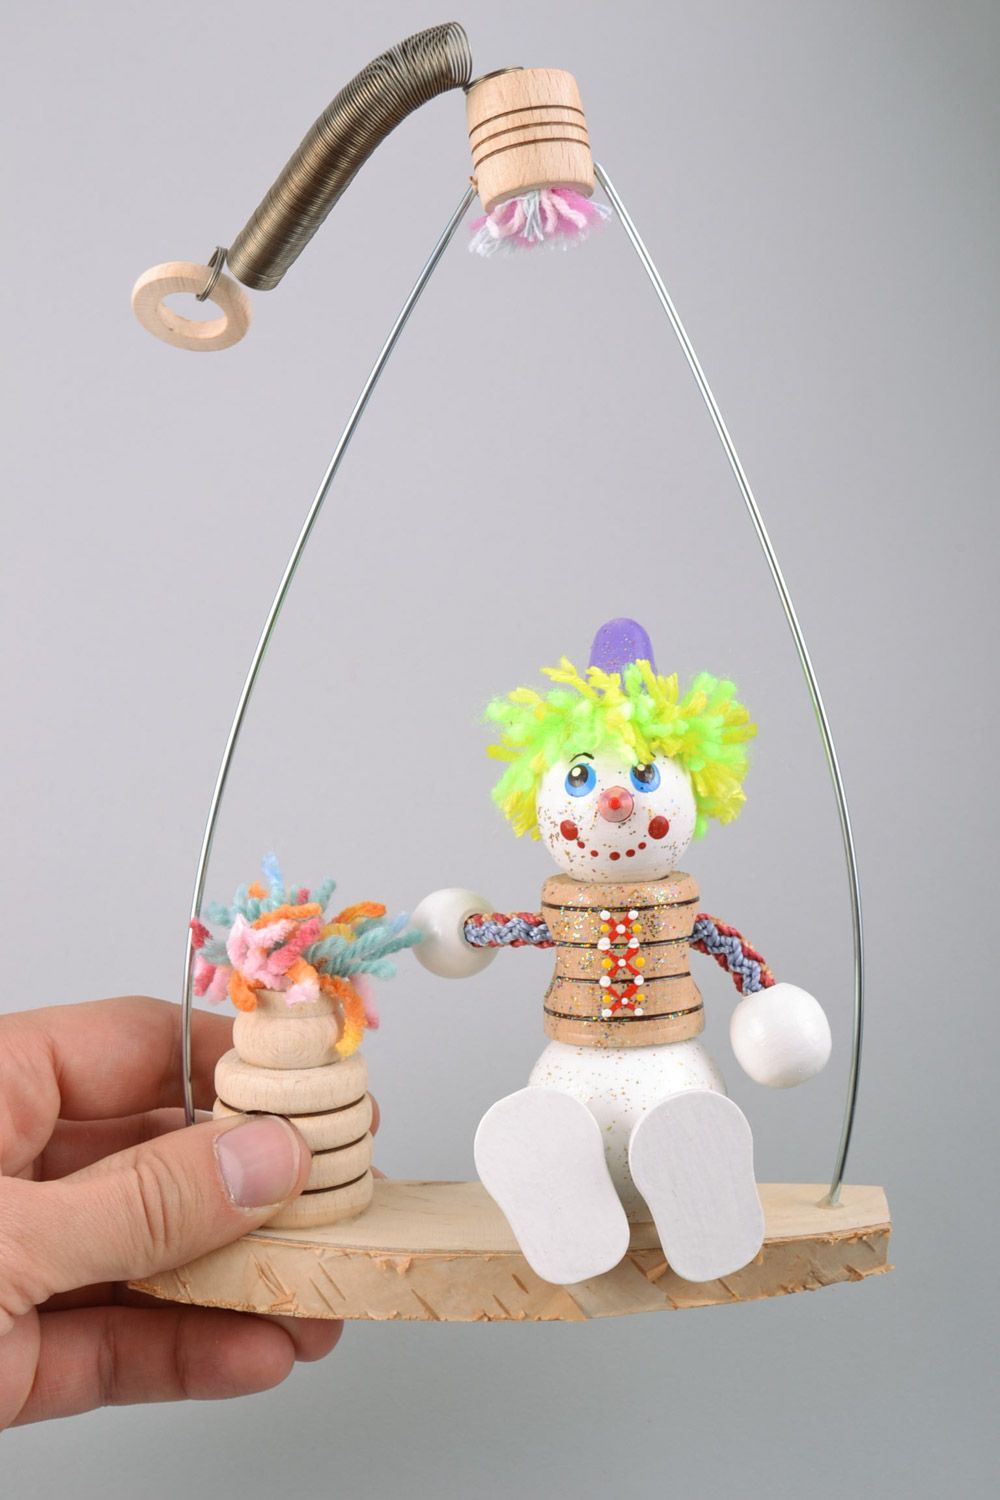 Деревянная игрушка расписанная красками в виде внеговика ручной работы фото 2